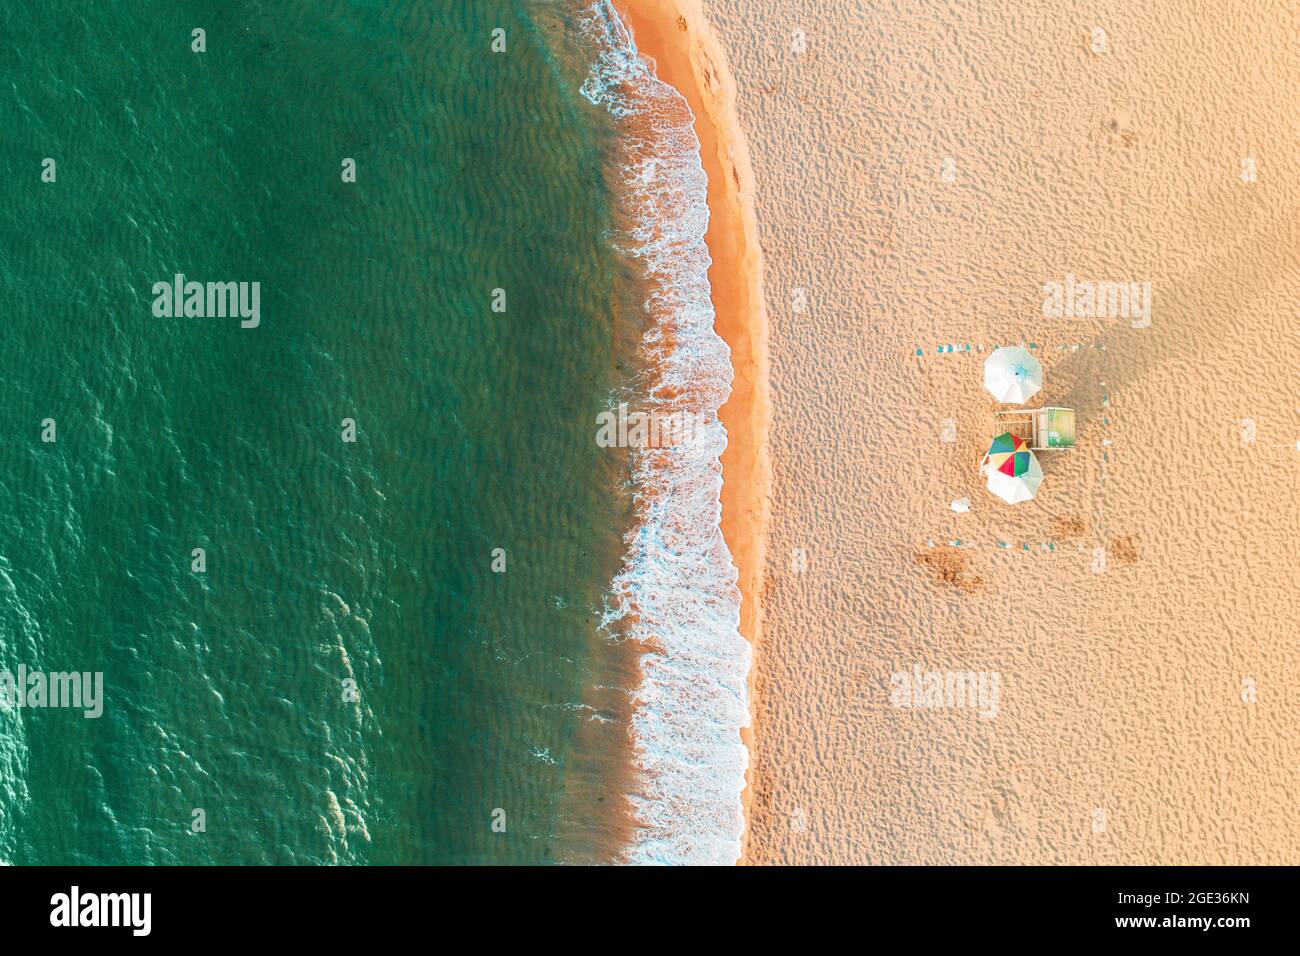 Vue de dessus de l'antenne sur la plage. Parapluies, le sable et les vagues de la mer Banque D'Images